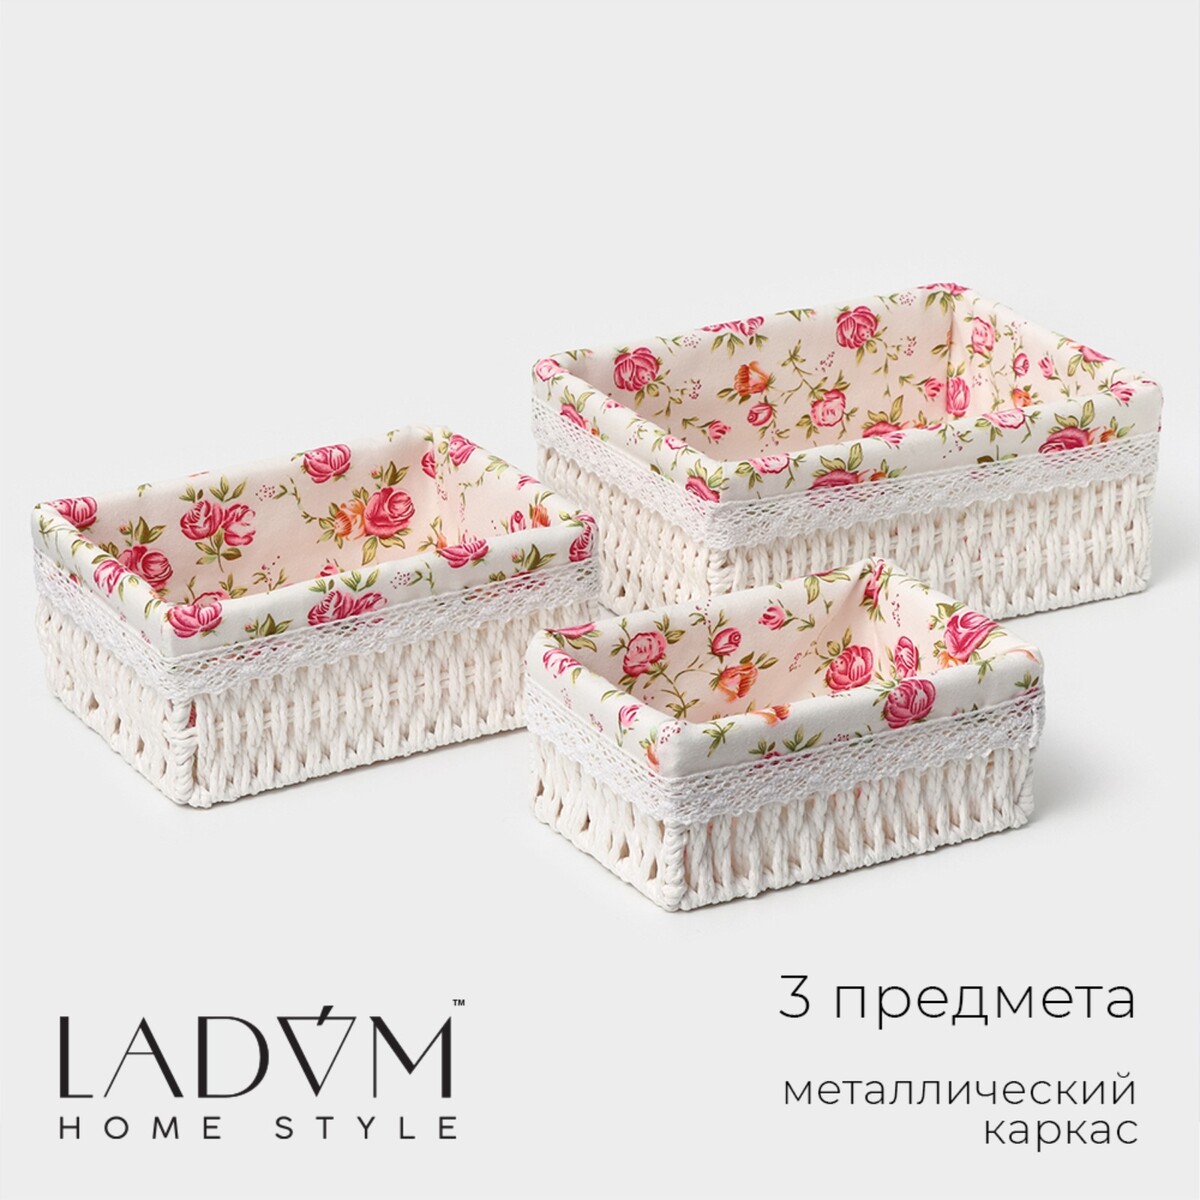 Набор корзин для хранения ladо́m, ручное плетение, 3 шт: от 19×13×8 см до 26×20×11 см, цвет белый